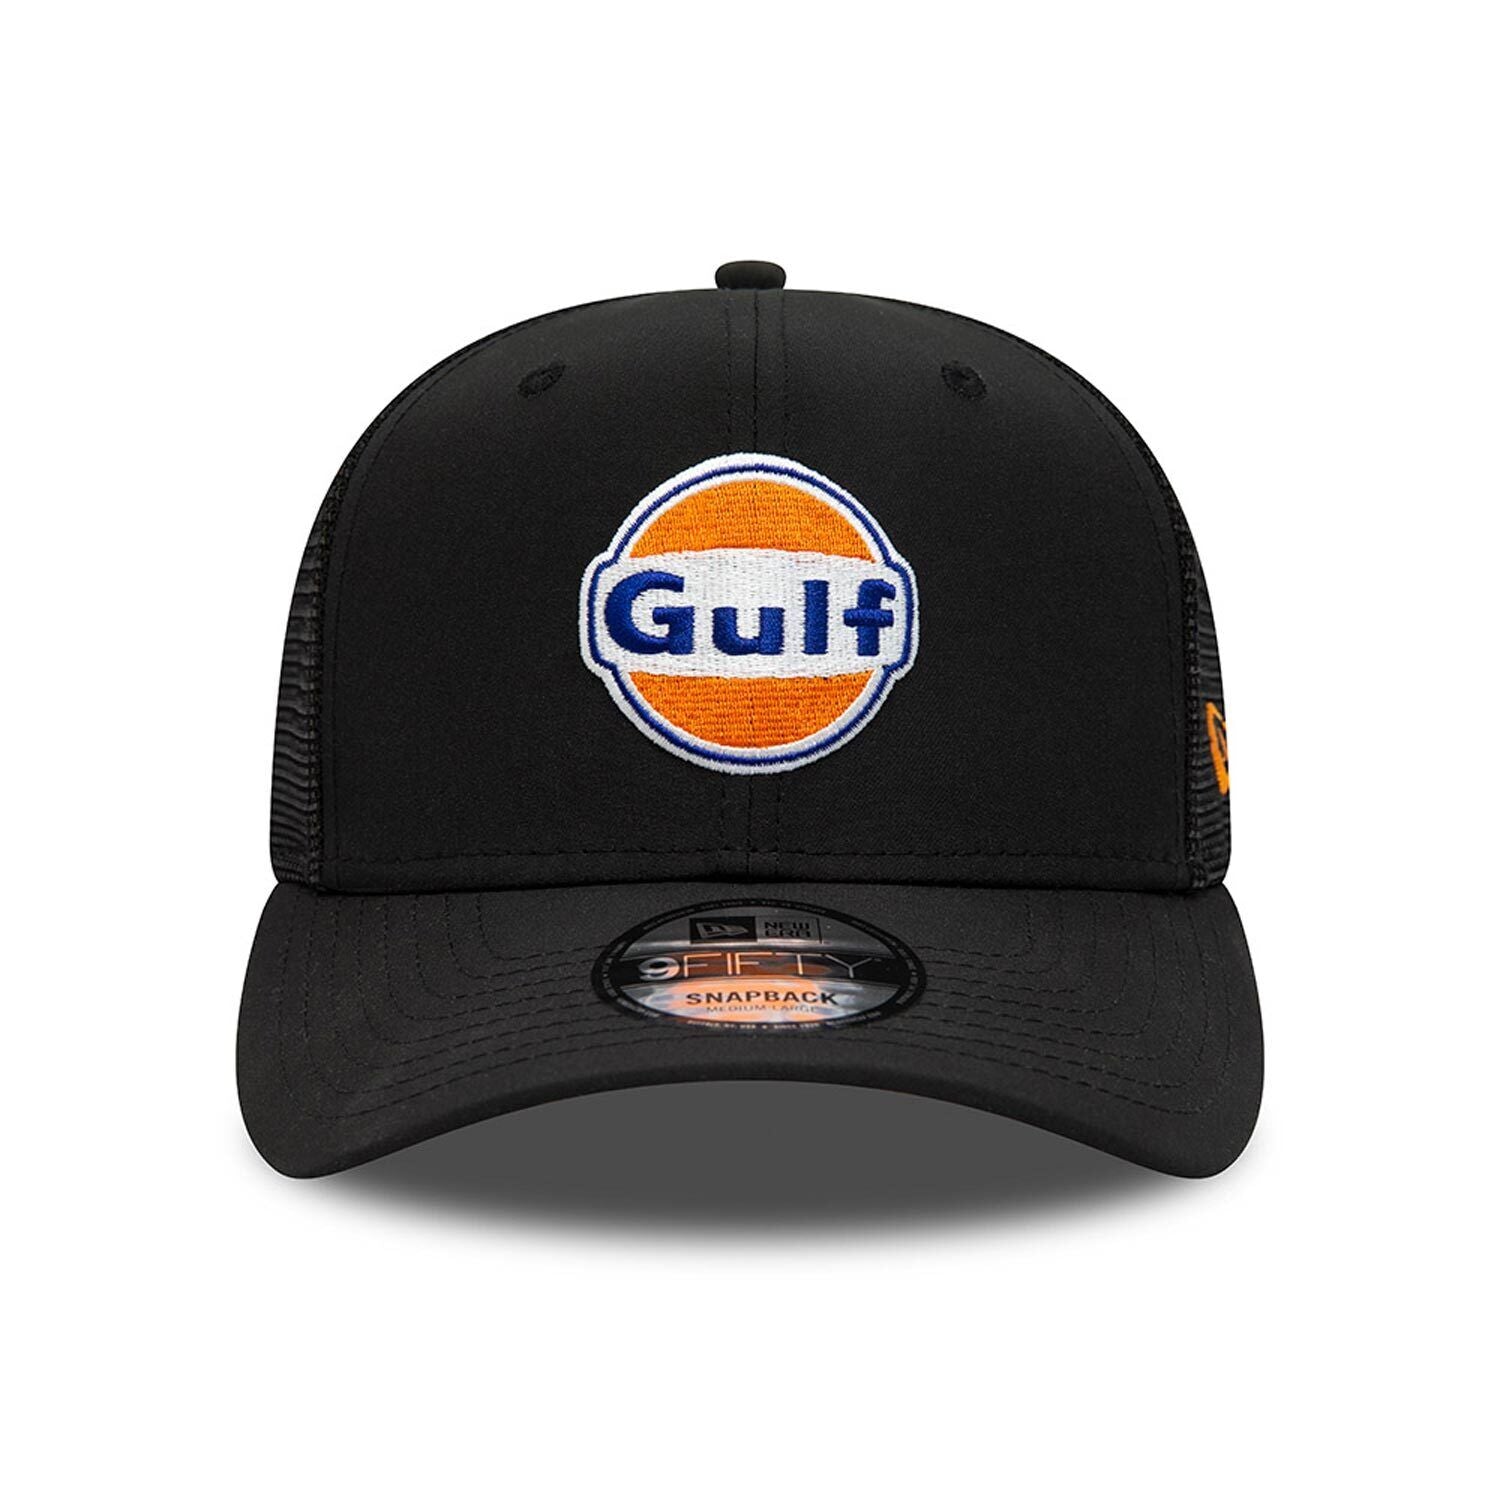 McLaren F1 Adult Gulf Special Edition Trucker Hat Black